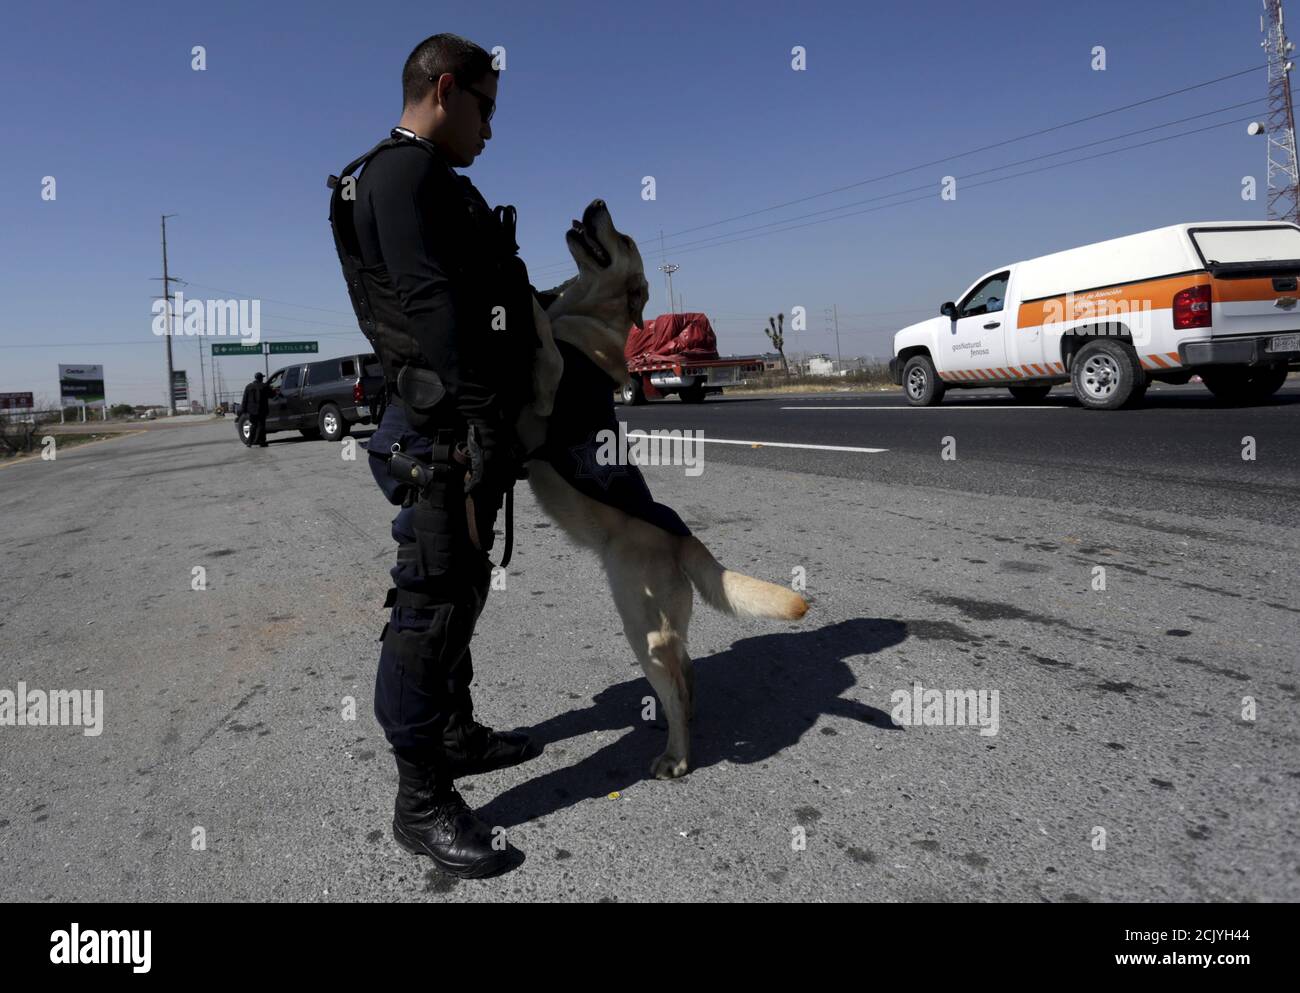 gta 5 police dogs